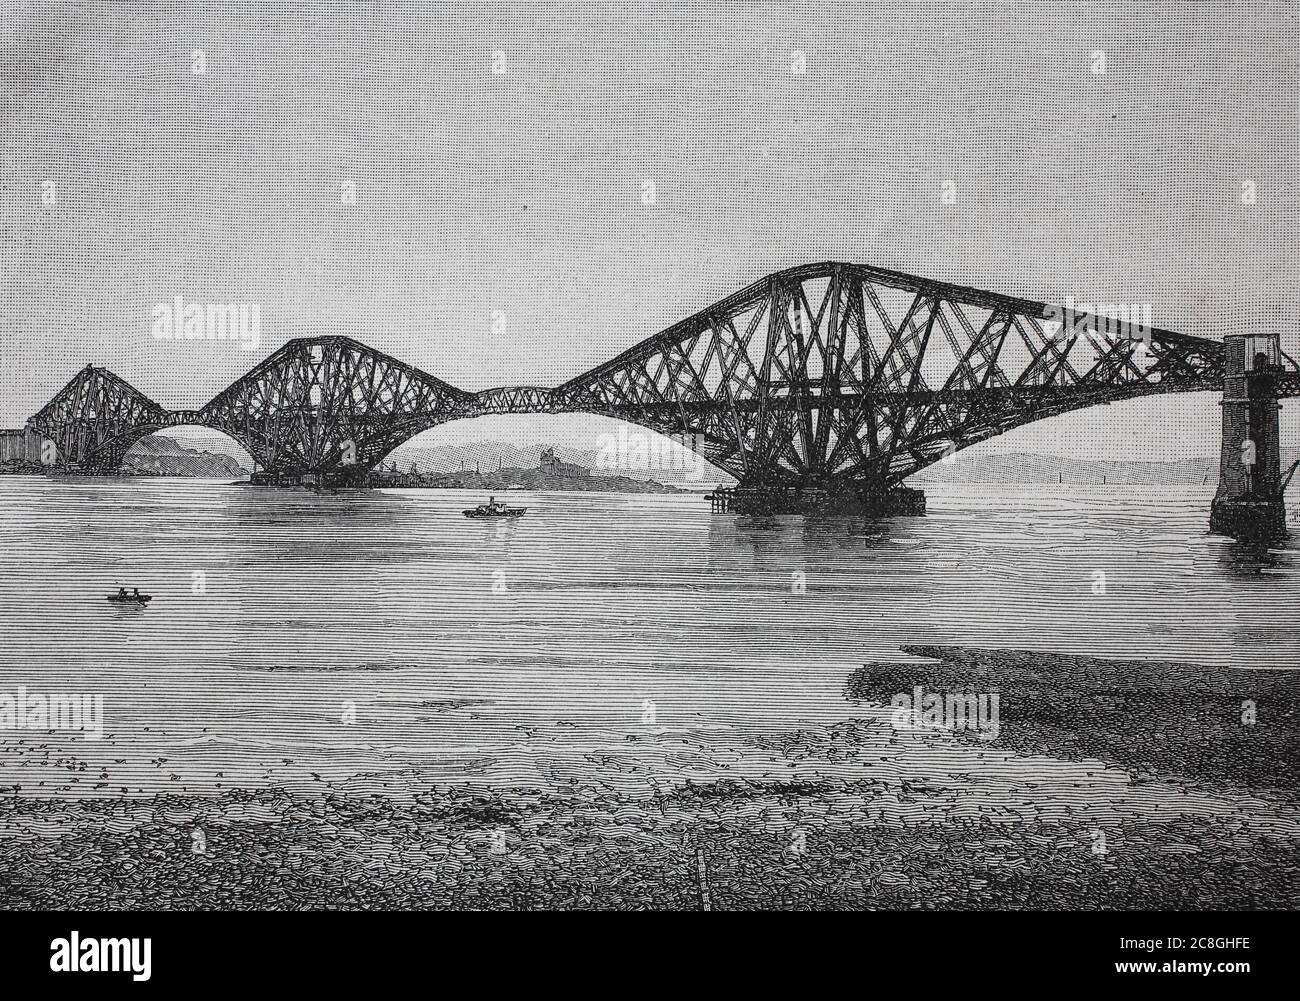 The Forth Bridge, eine freitragende Eisenbahnbrücke über den Firth of Forth im Osten Schottlands, 1890 Stockfoto